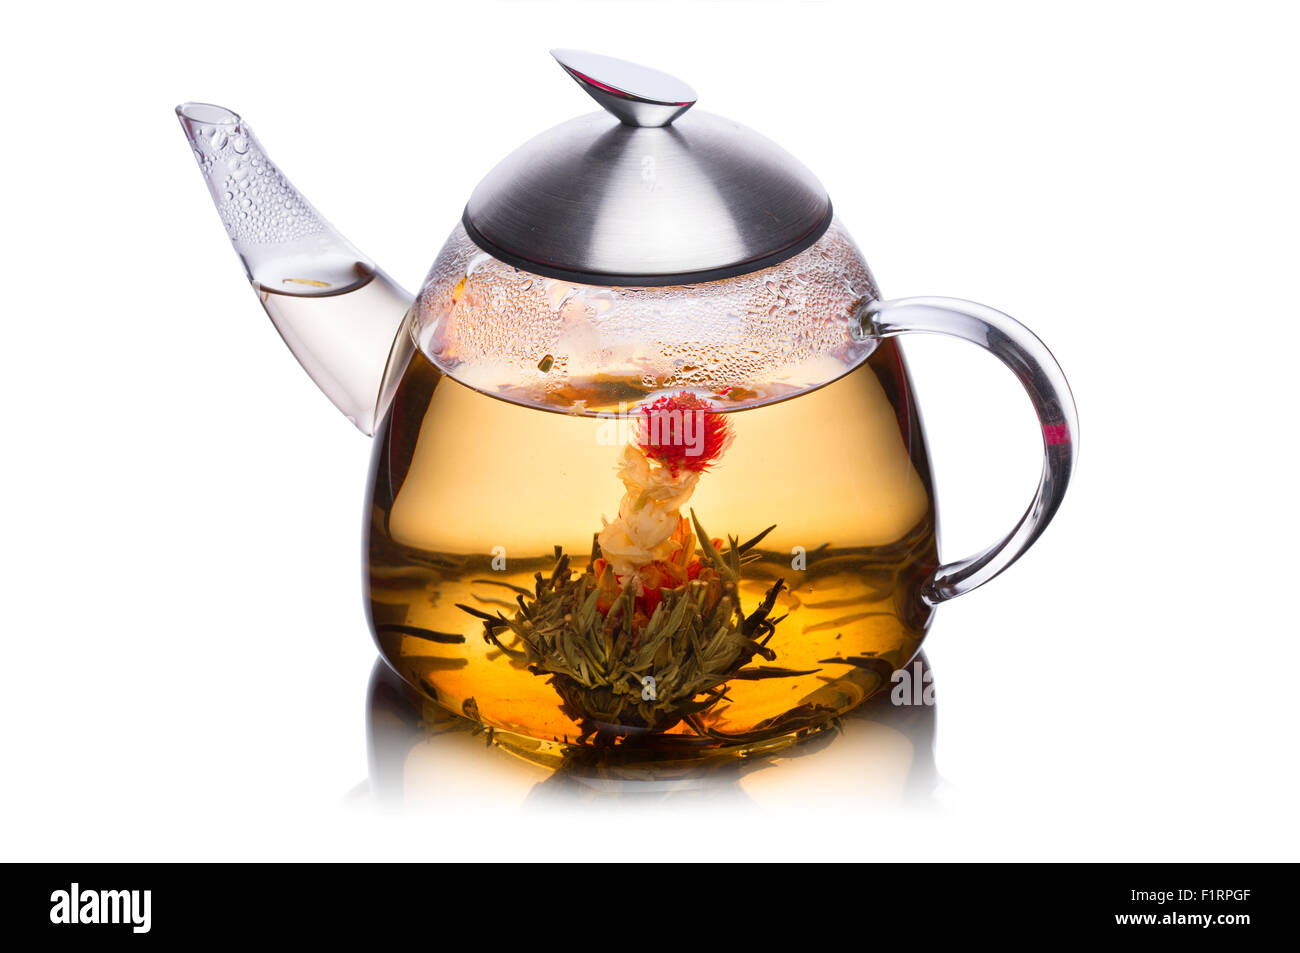 Vaso de agua lleno de té de hierbas con flores floreciendo. Comer sano. Sun tea Foto de stock